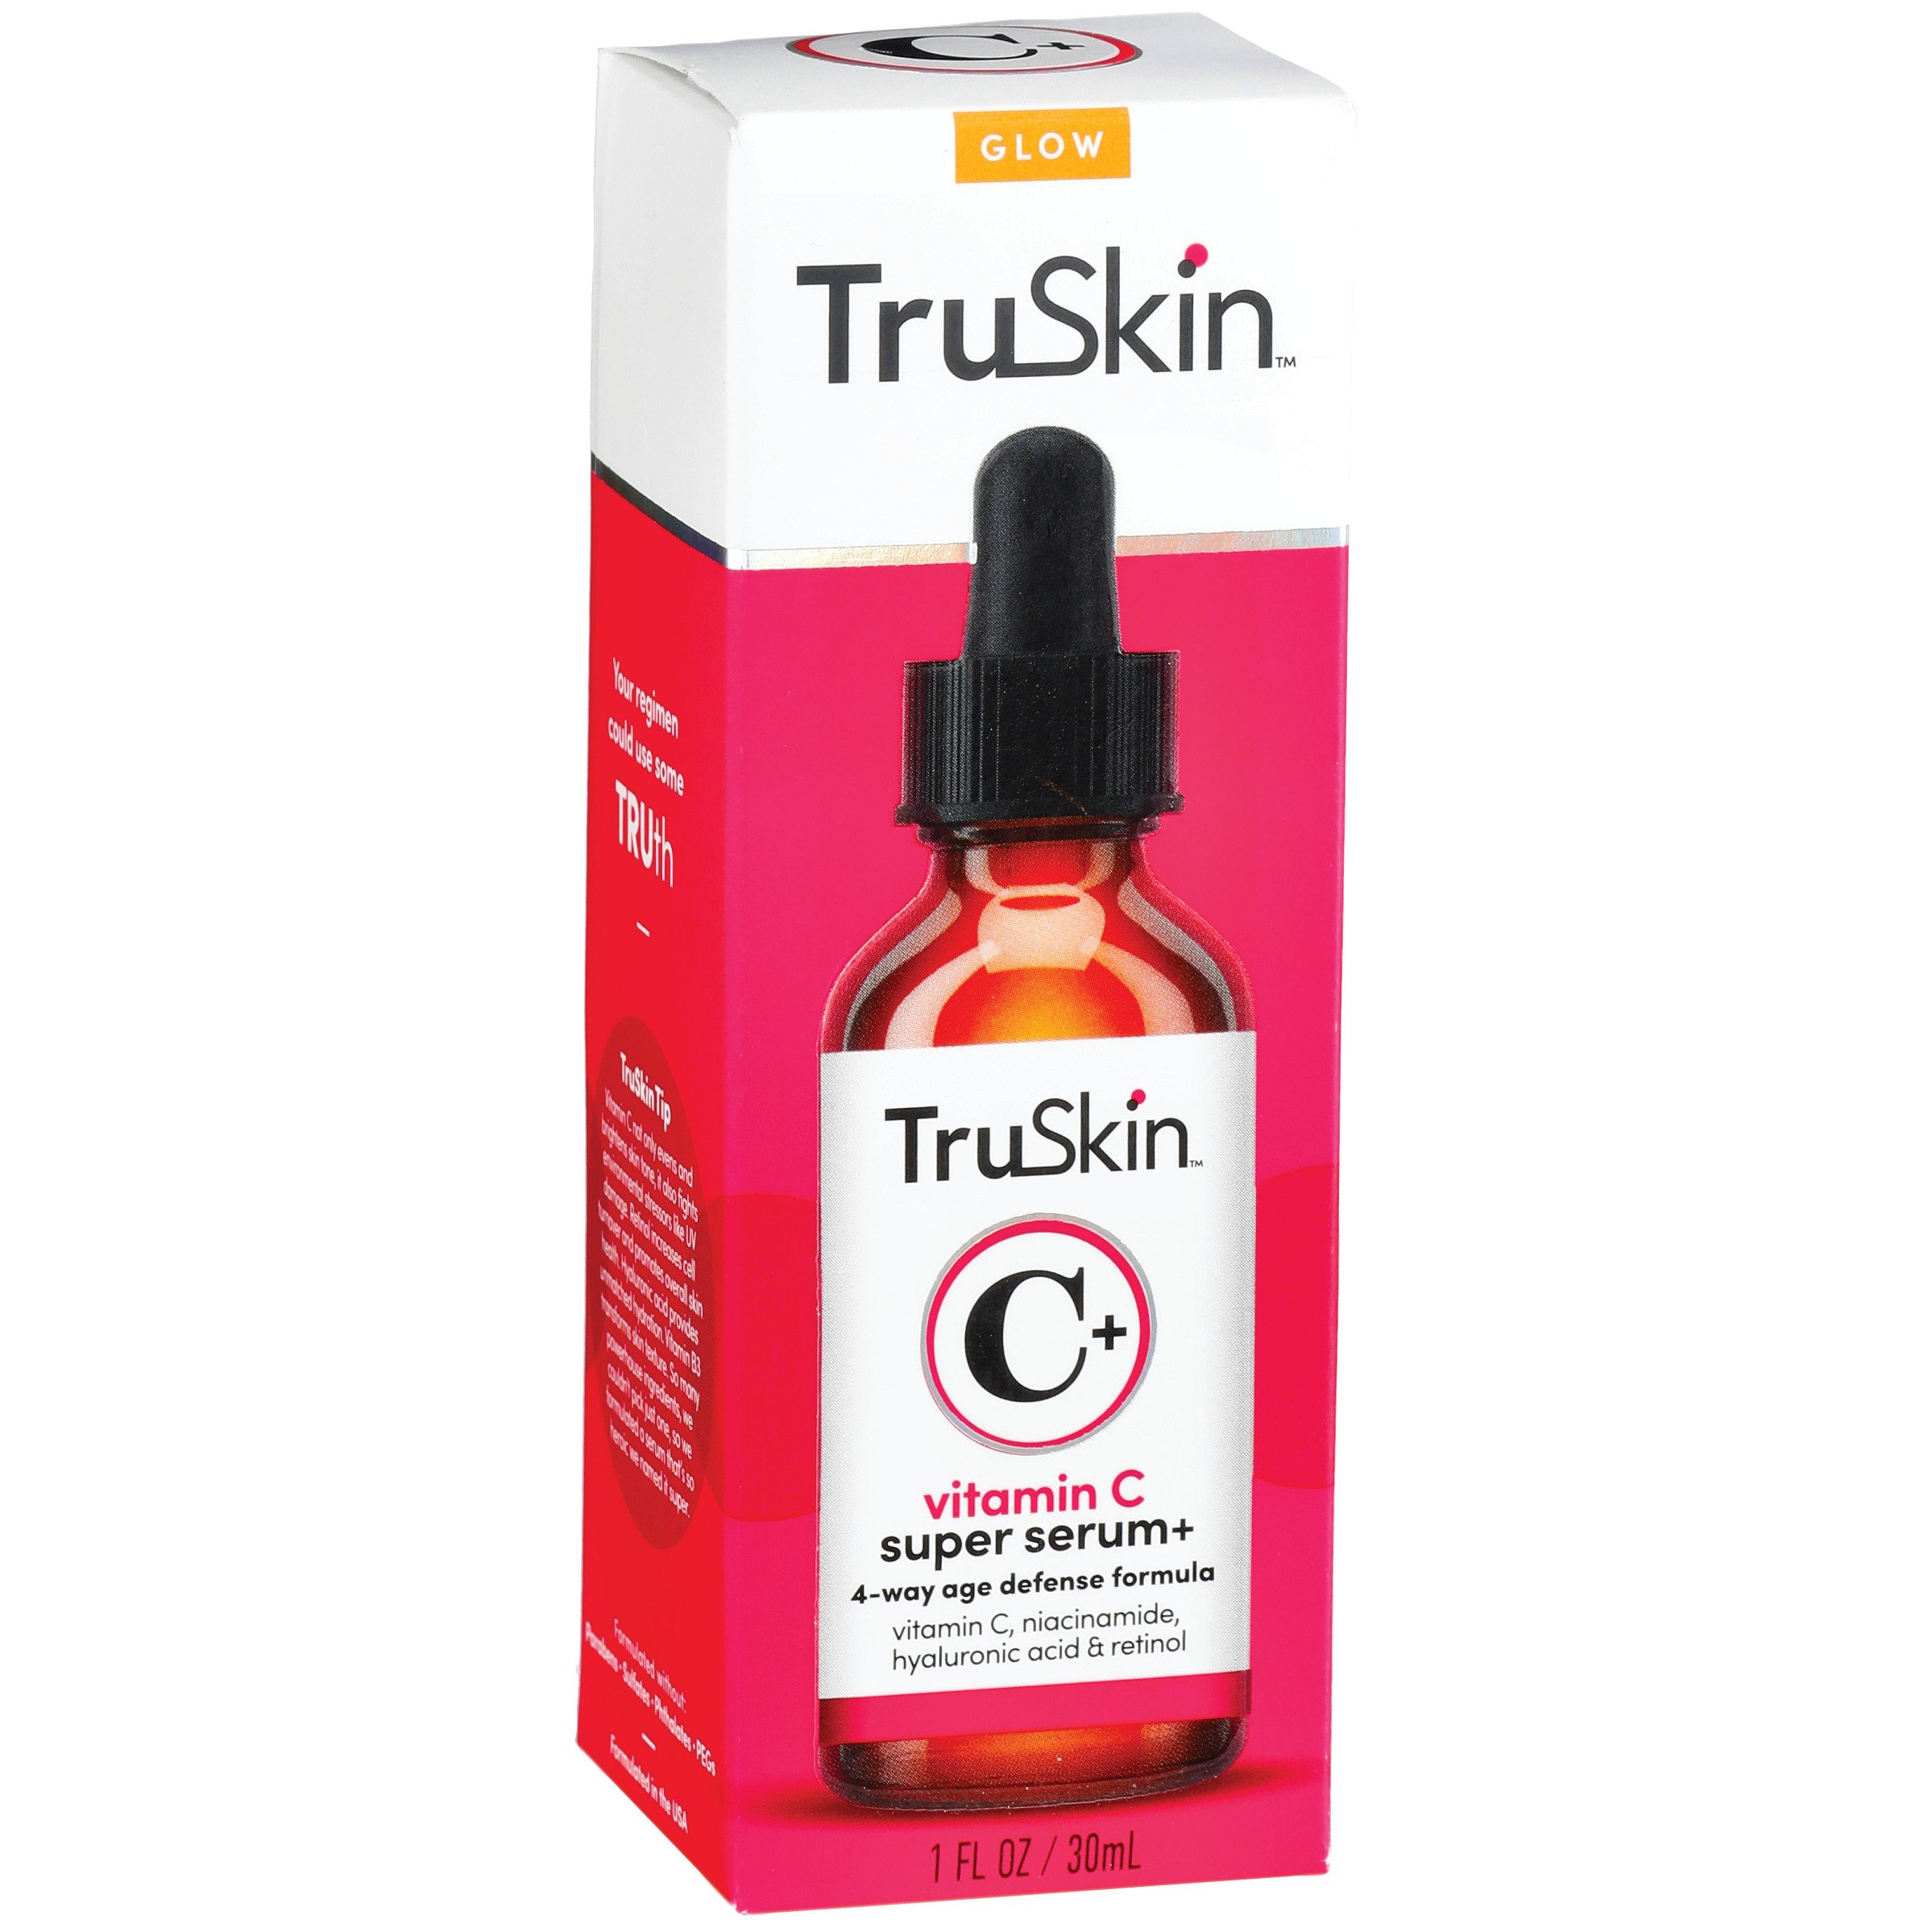 TruSkin Vitamin C Super Serum - Shop Bath Skin at H-E-B